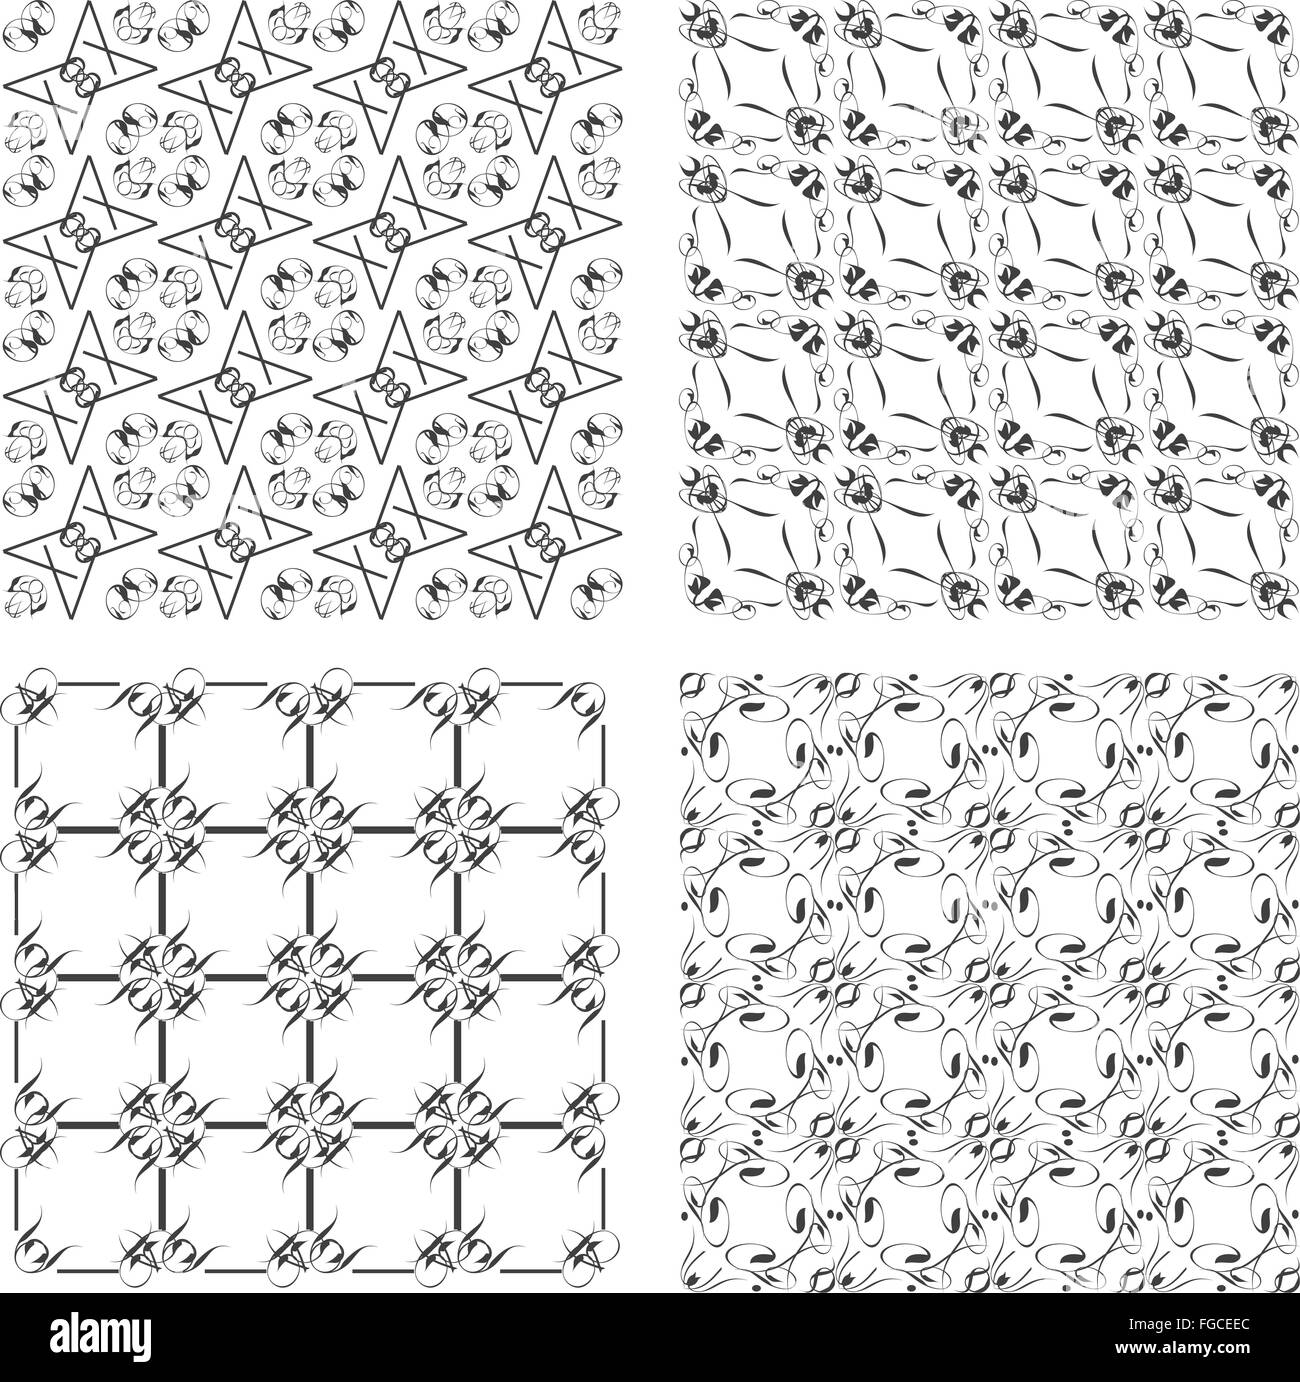 seamless patterns set Stock Photo